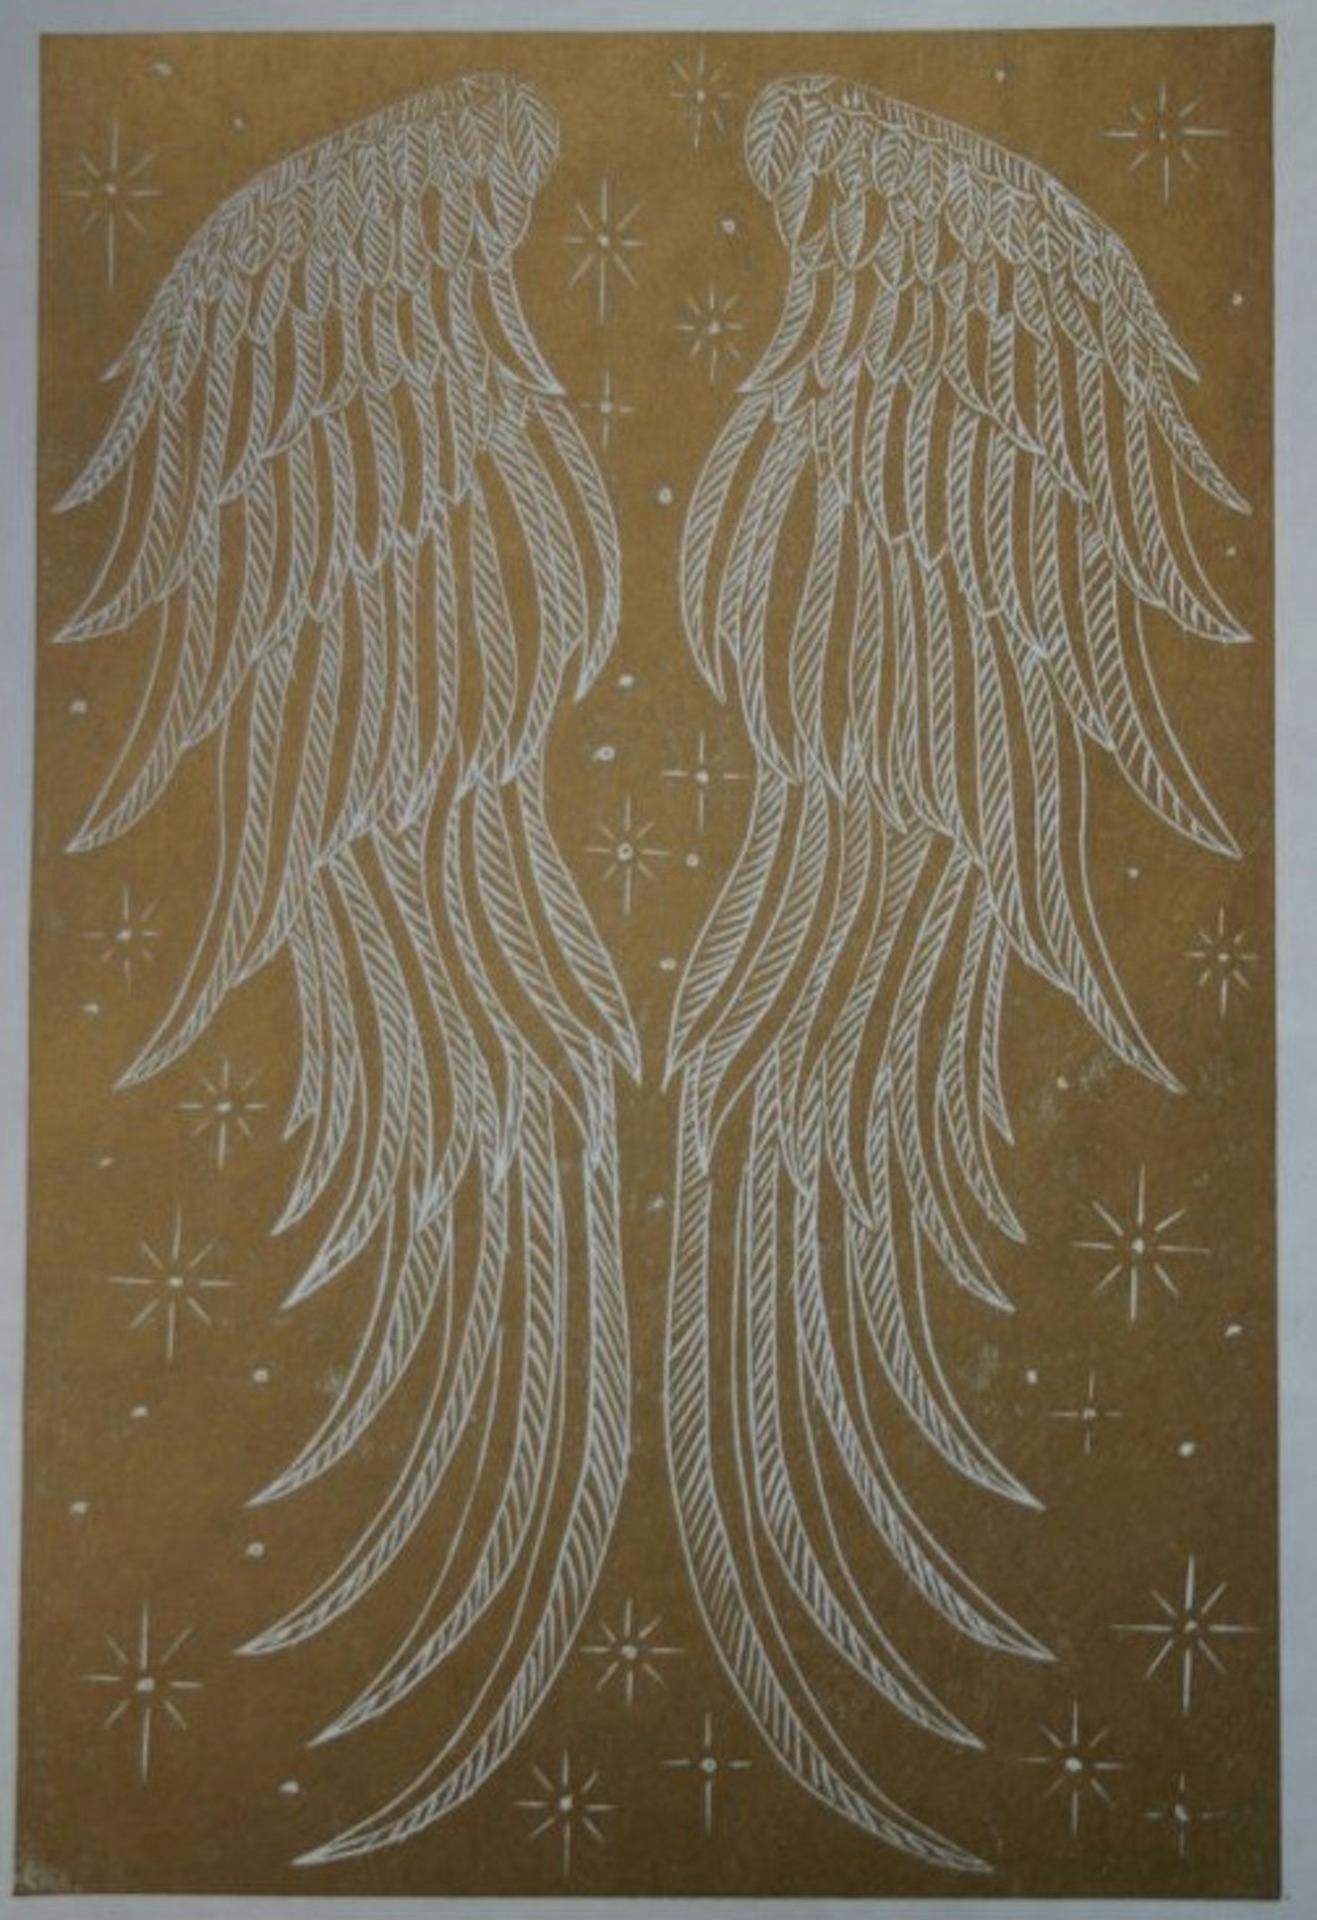 Transcend, Kate Willows, Druck in limitierter Auflage, Angelic Artwork, Erschwingliche Kunst